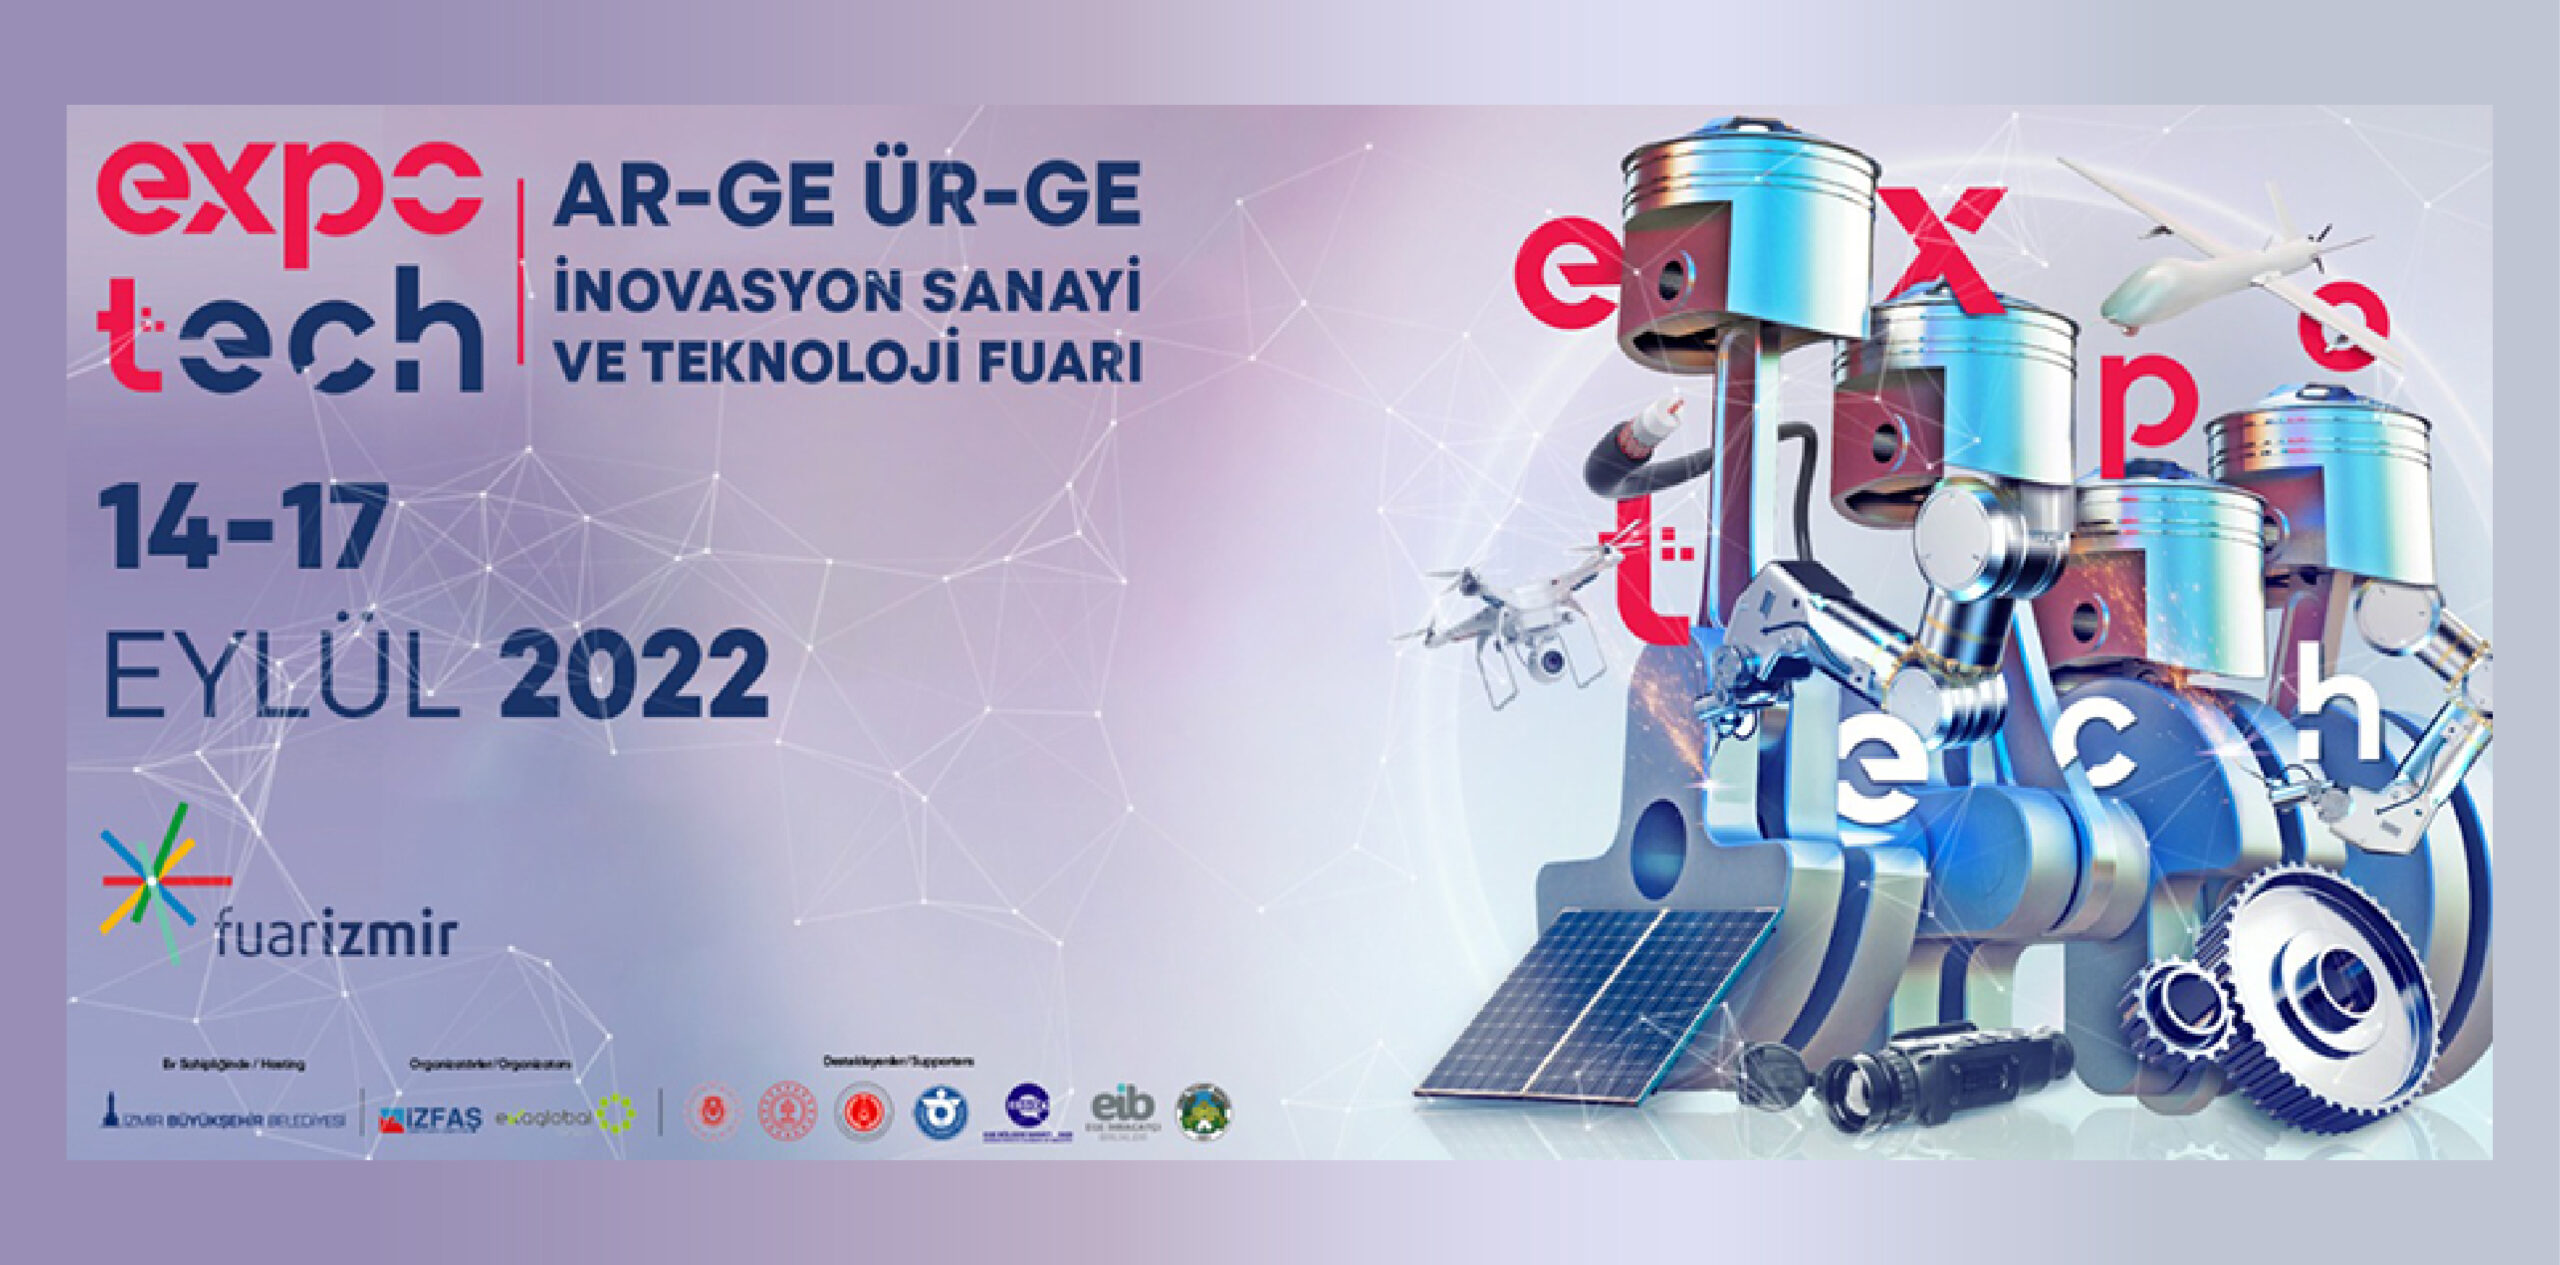 İZMİR Expo Tech / Ar-Ge Ür-ge İnovasyon Sanayi ve Teknoloji Fuarı 14-17 Eylül 2022